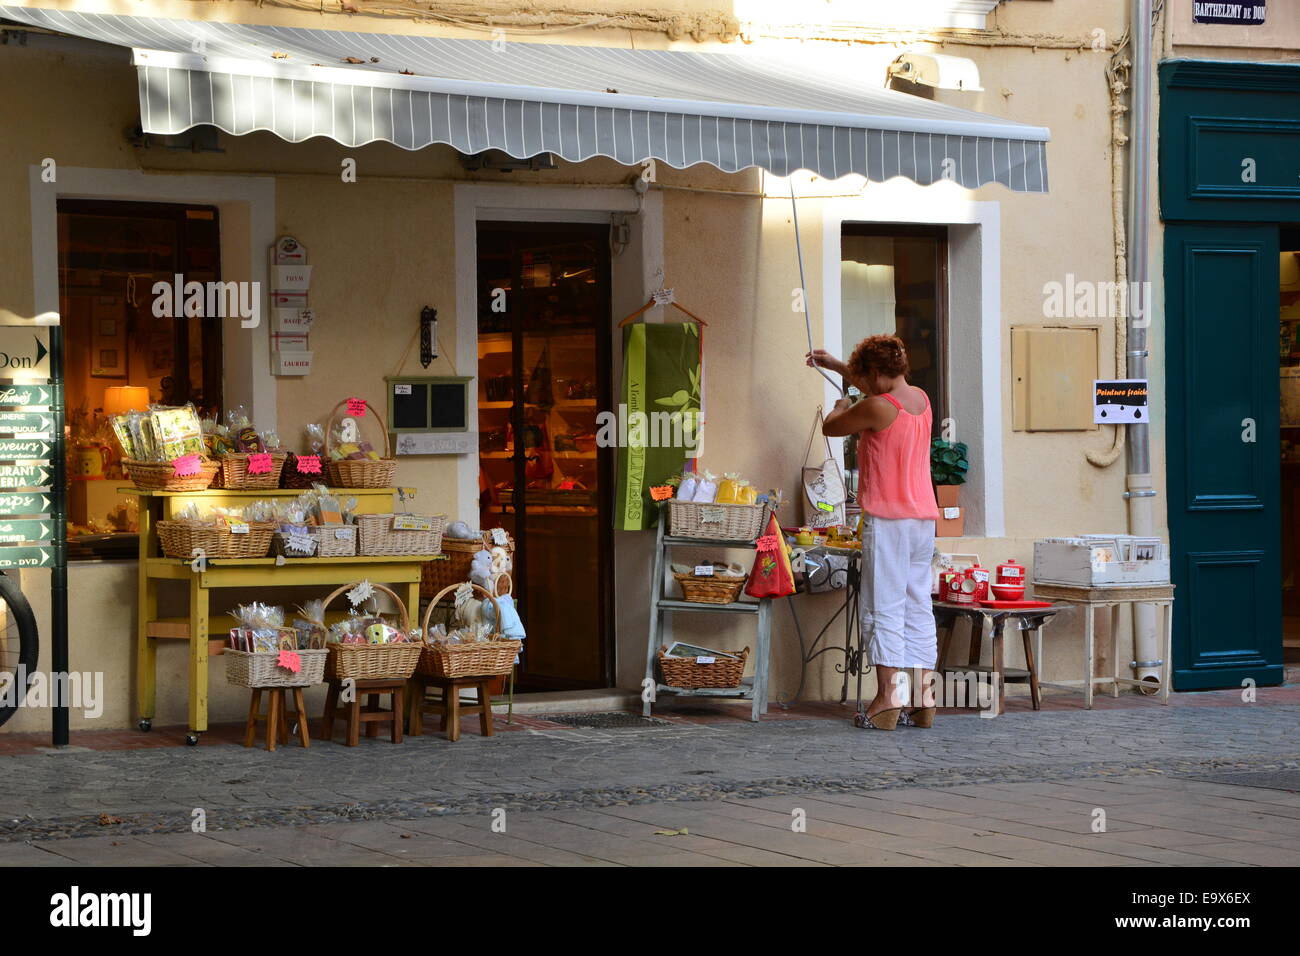 Femme fermeture sa boutique de souvenirs à la fin de la journée dans le sud de la France Banque D'Images